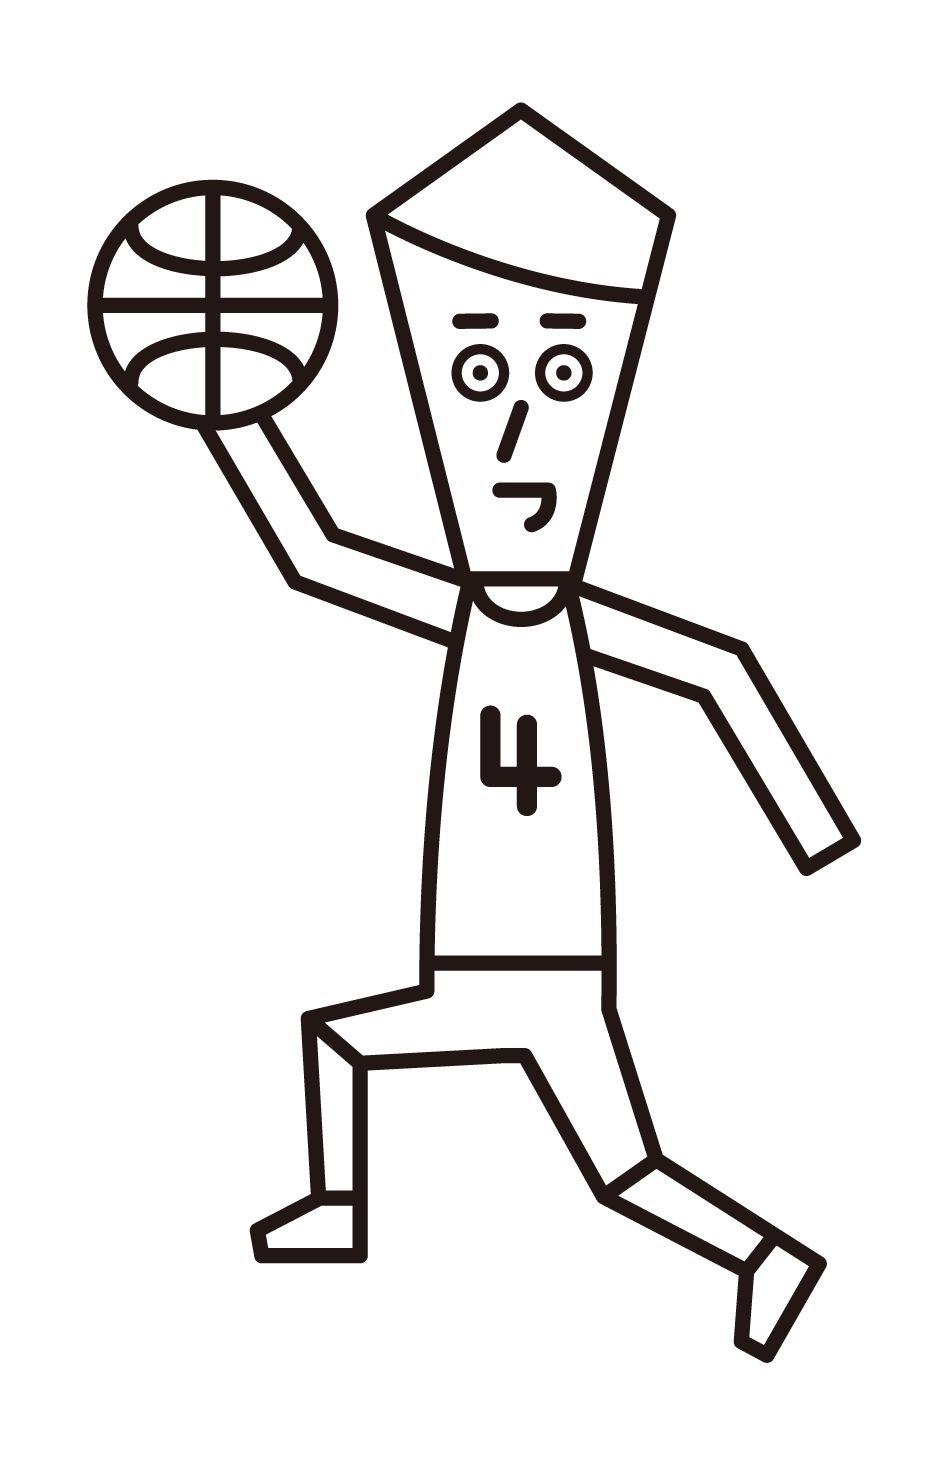 レイアップシュートをするバスケットボール選手（男性）のイラスト